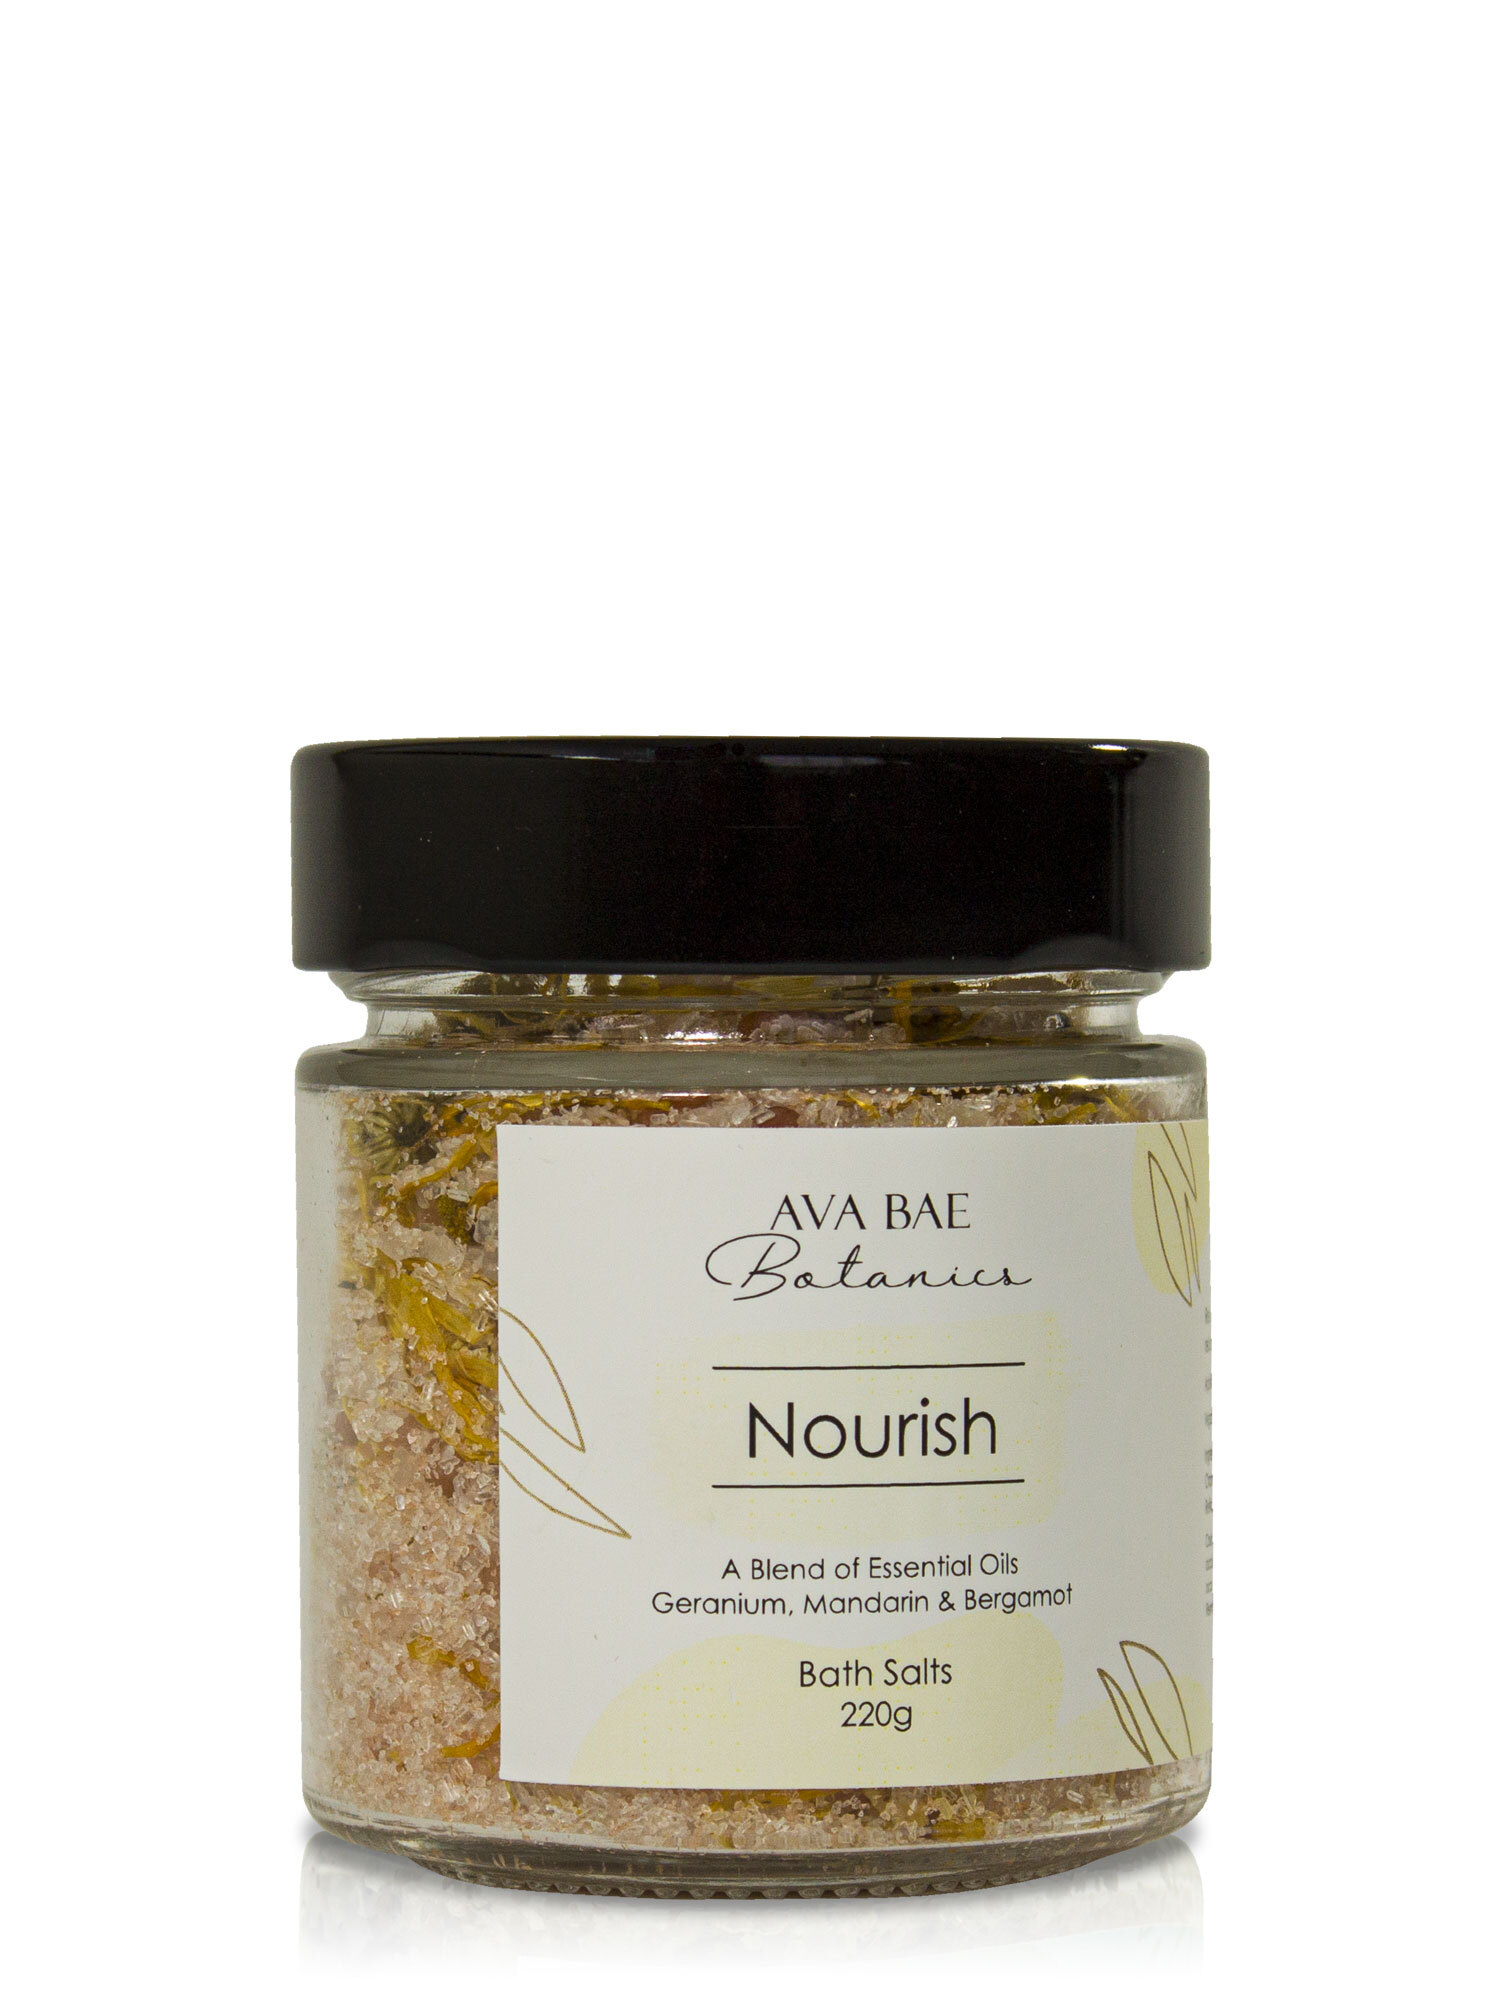 Ava Bae Botanics Bath Salts 220g - Nourish